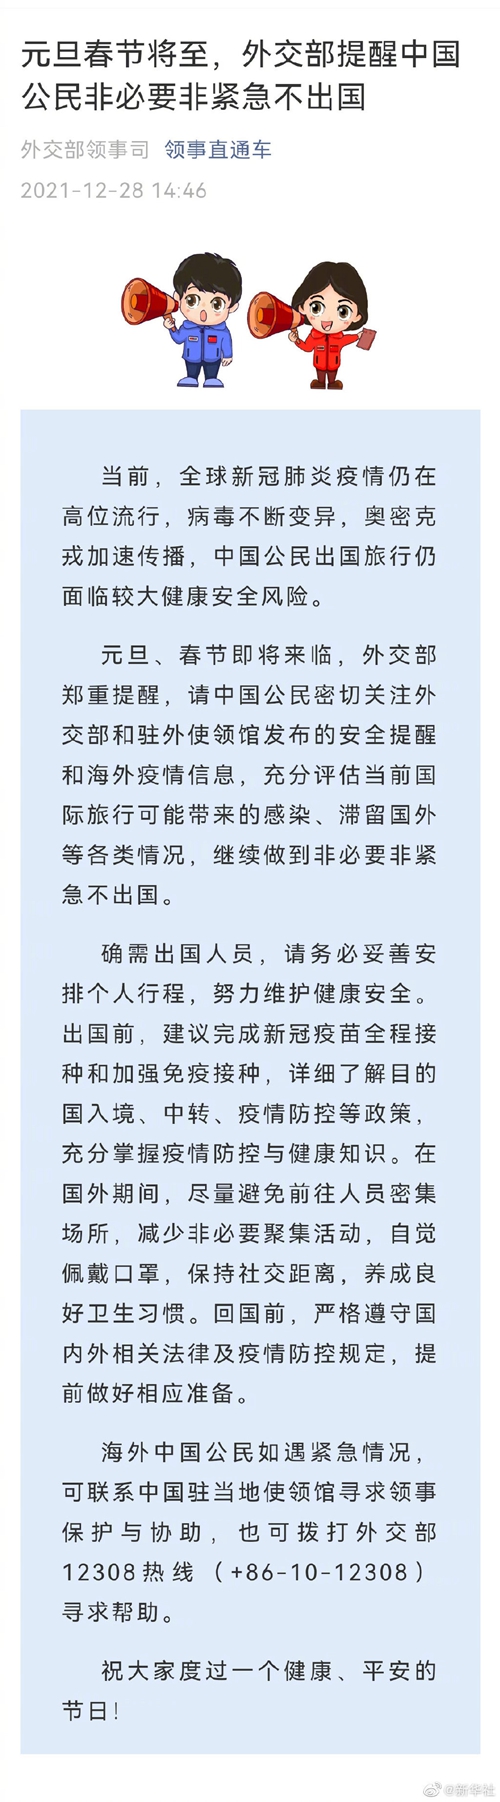 元旦春節將至，外交部提醒中國公民非必要非緊急不出國